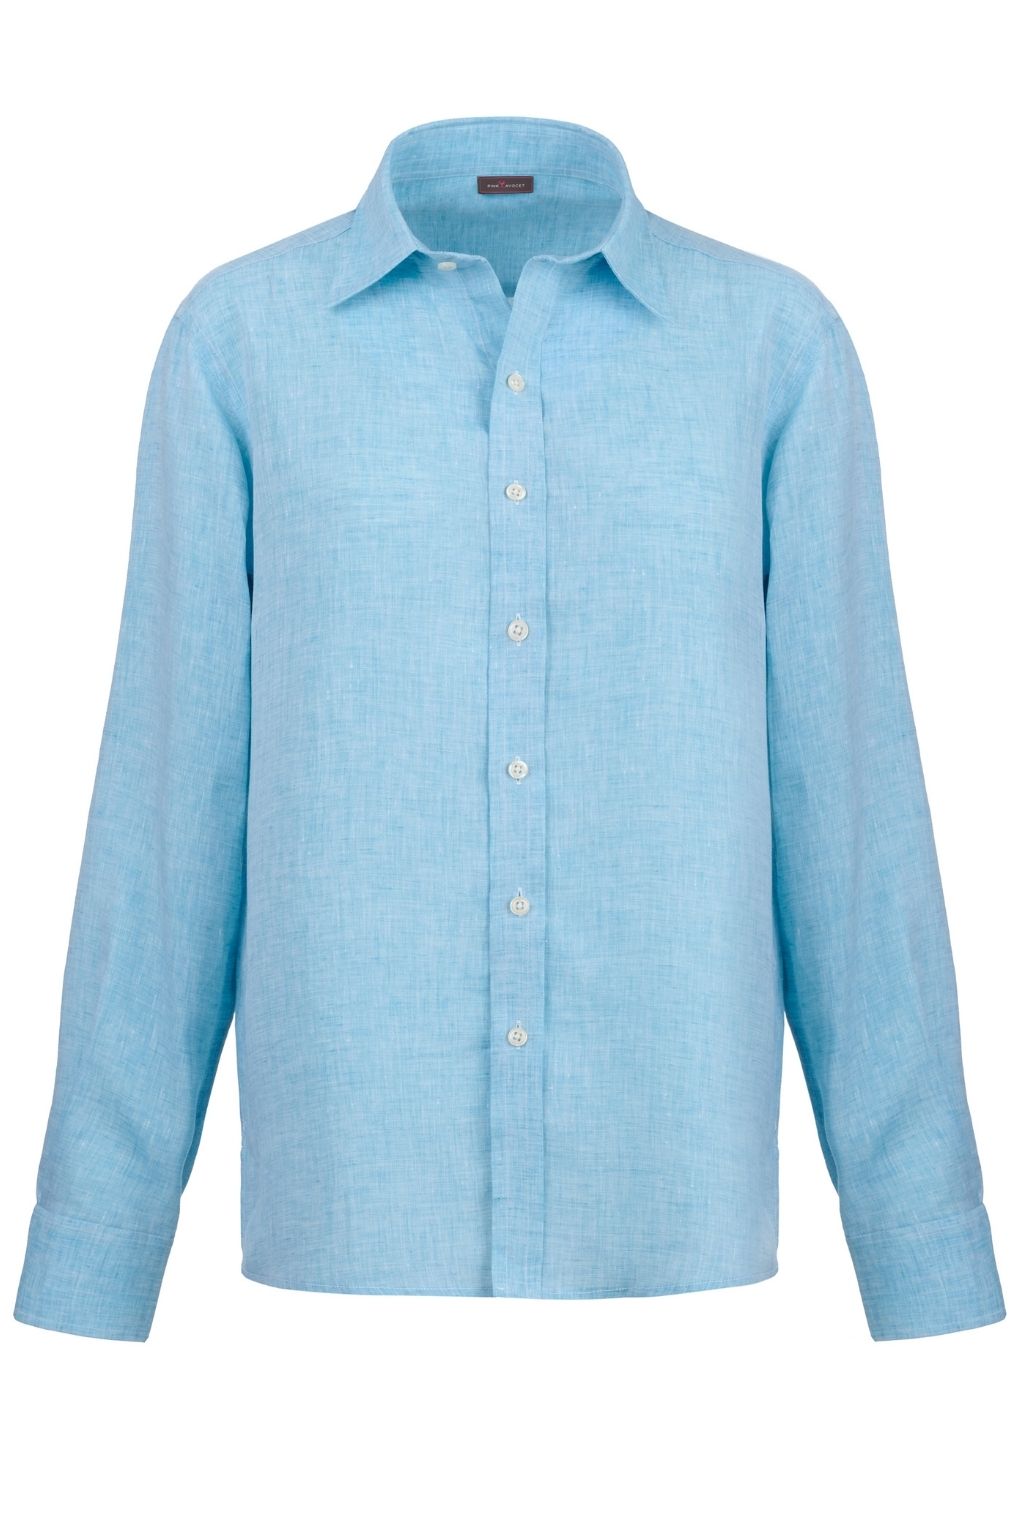 Men's Linen Shirt - Ocean